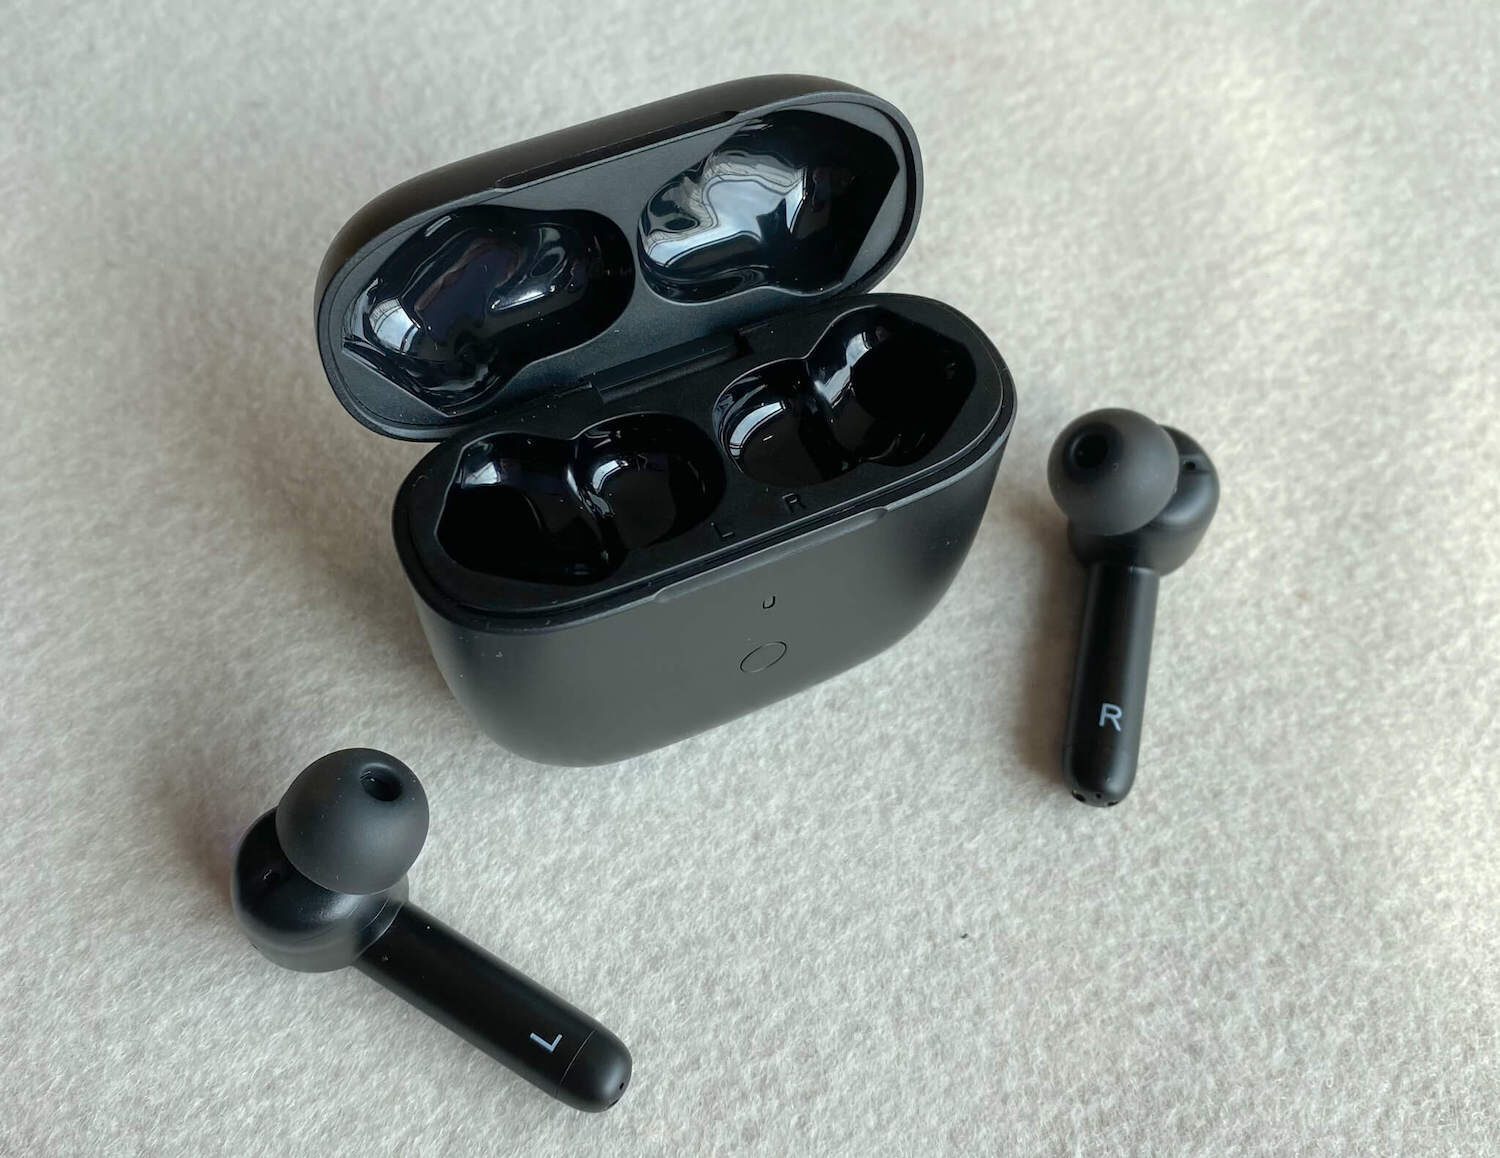 xFyro ANC Pro wireless earbuds